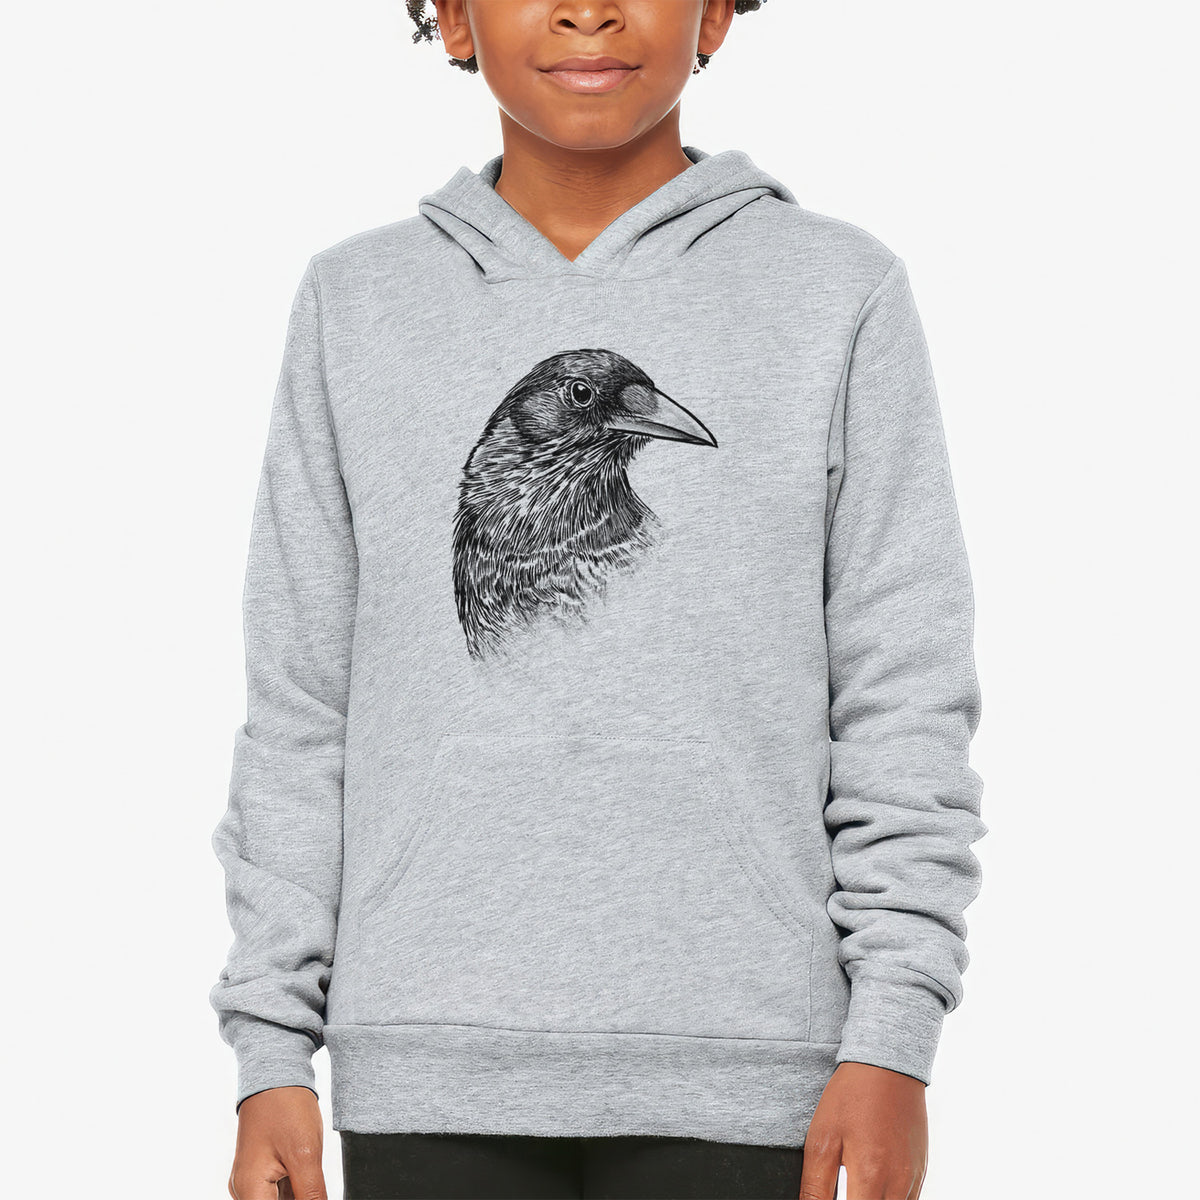 American Crow Bust - Corvus brachyrhynchos - Youth Hoodie Sweatshirt